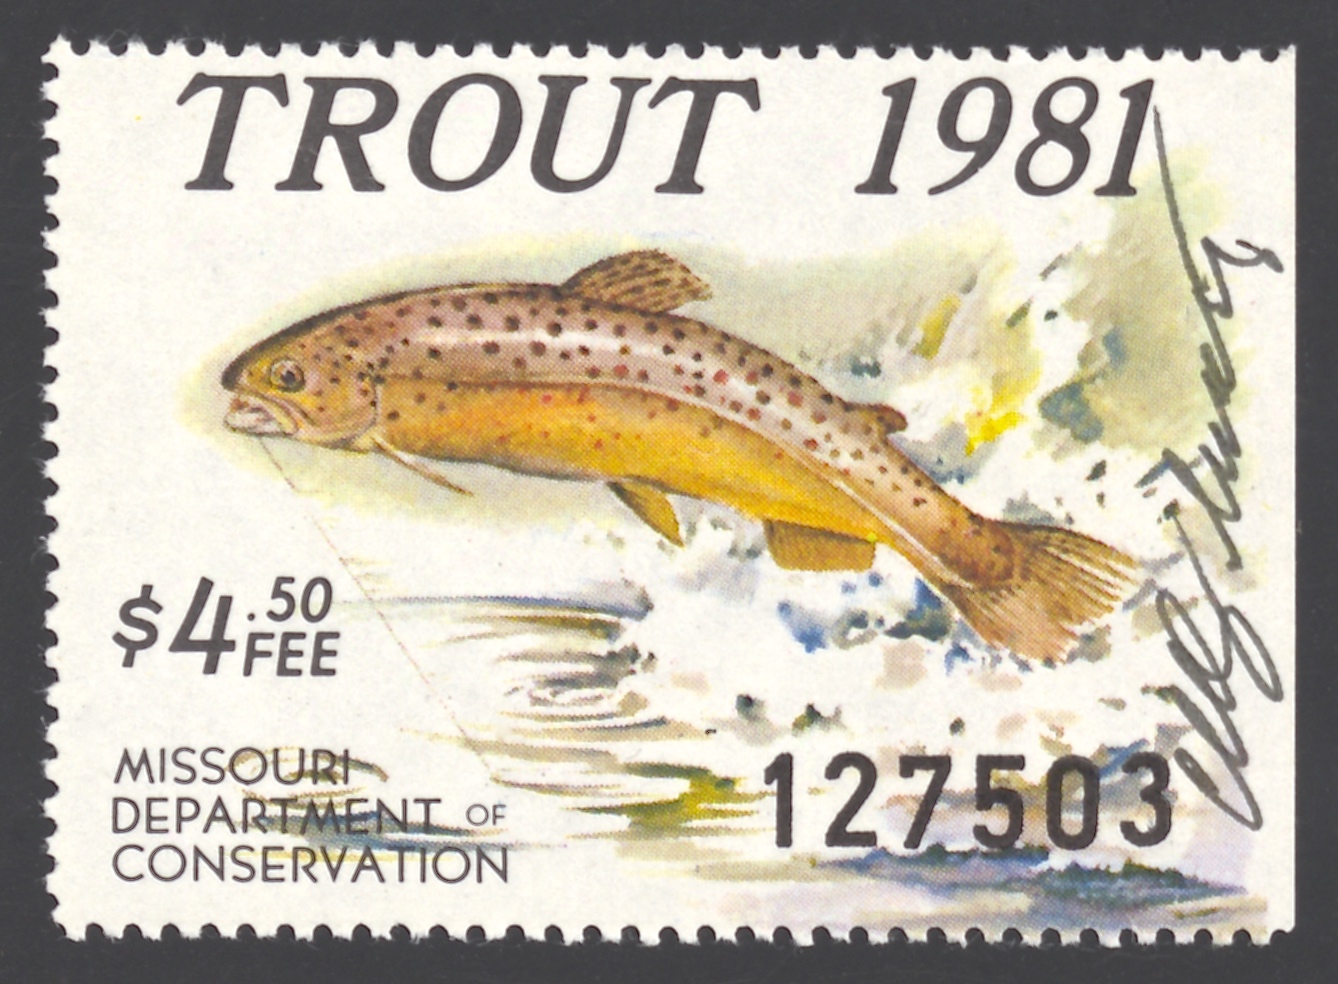 1981 Missouri Missouri Trout Stamp signed by Charles Schwartz